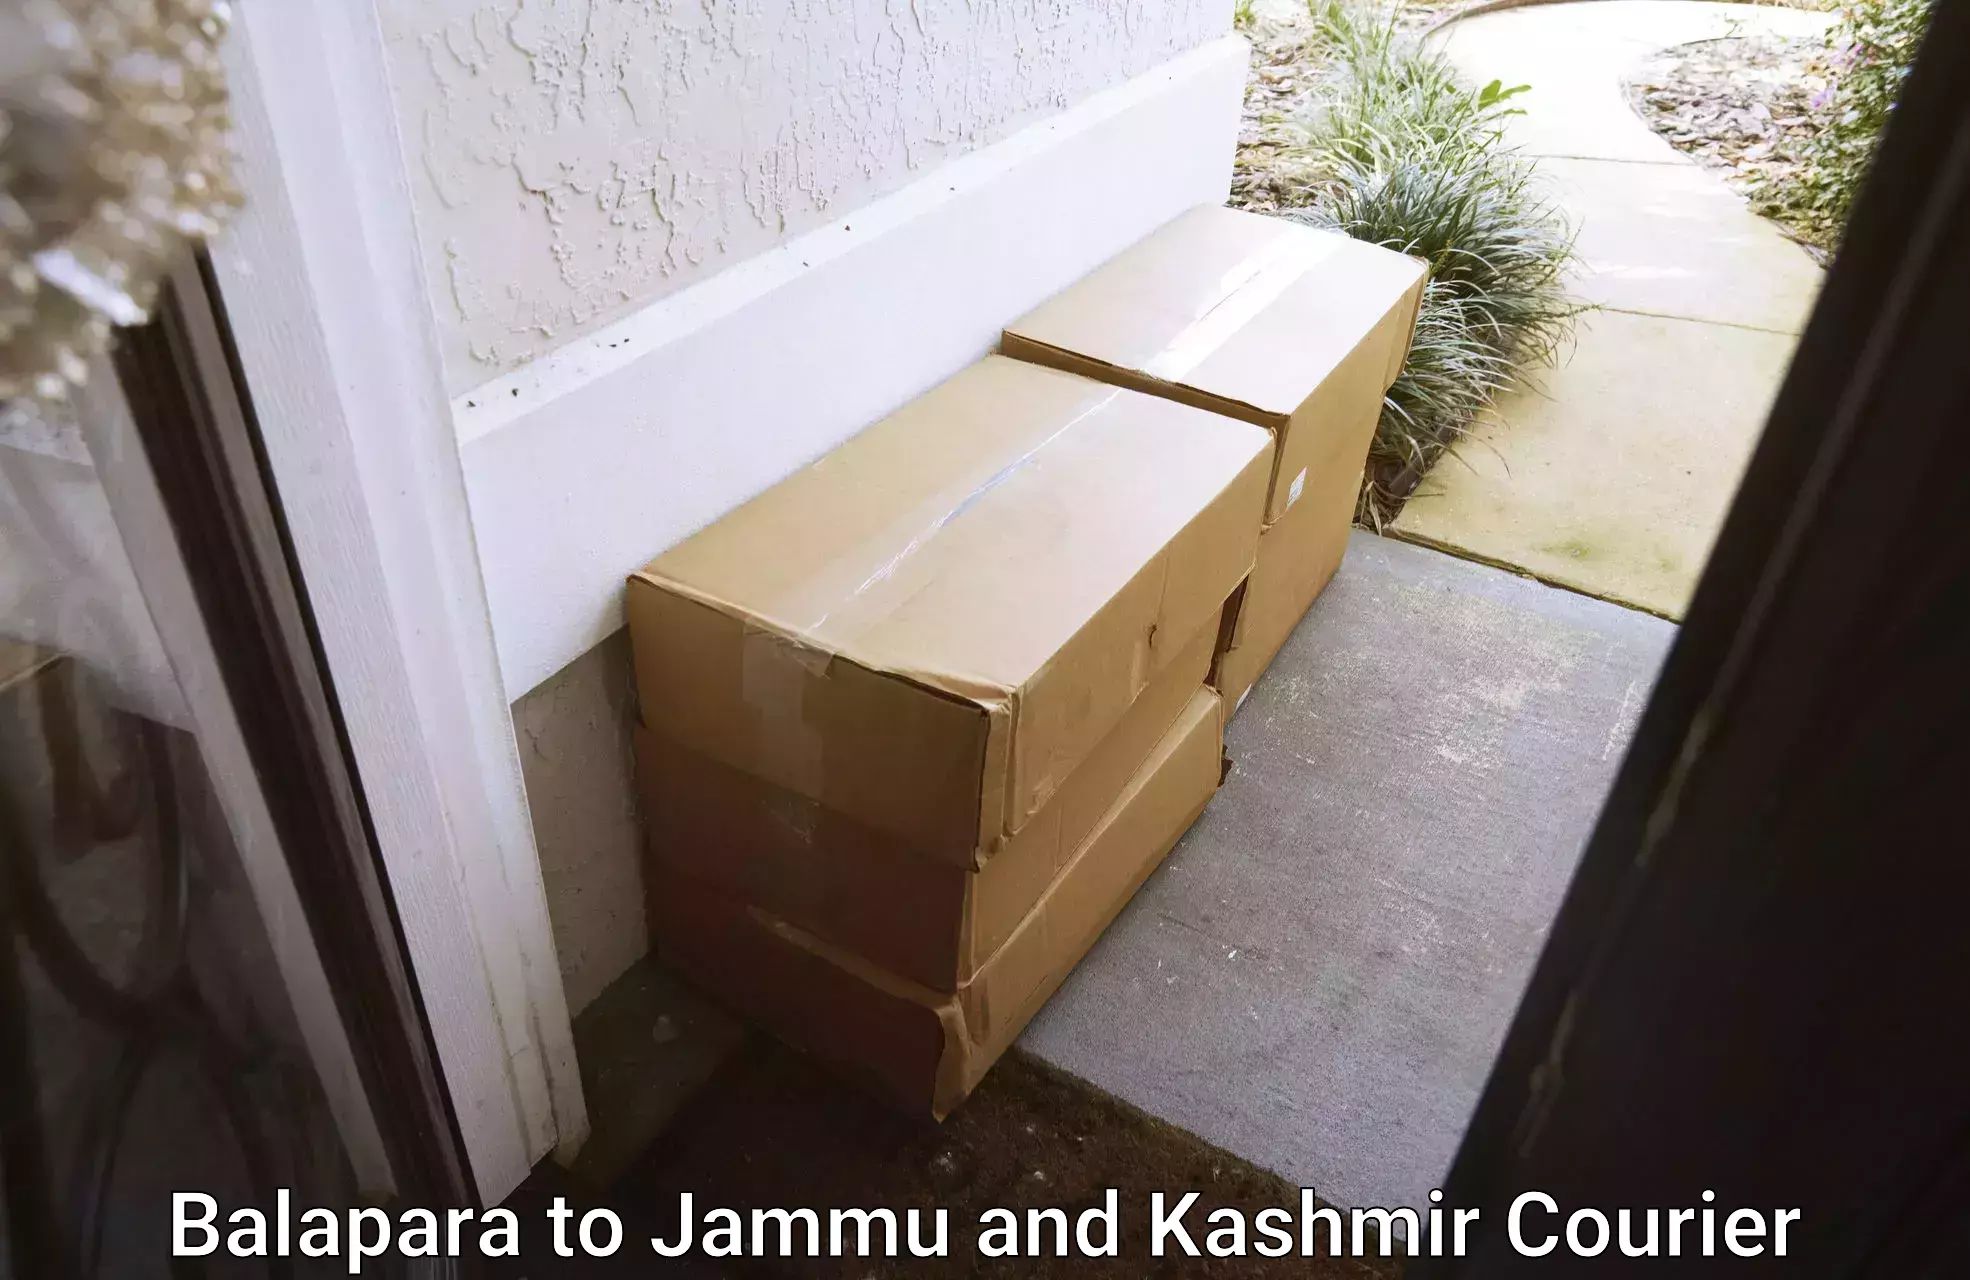 Courier app Balapara to Jammu and Kashmir